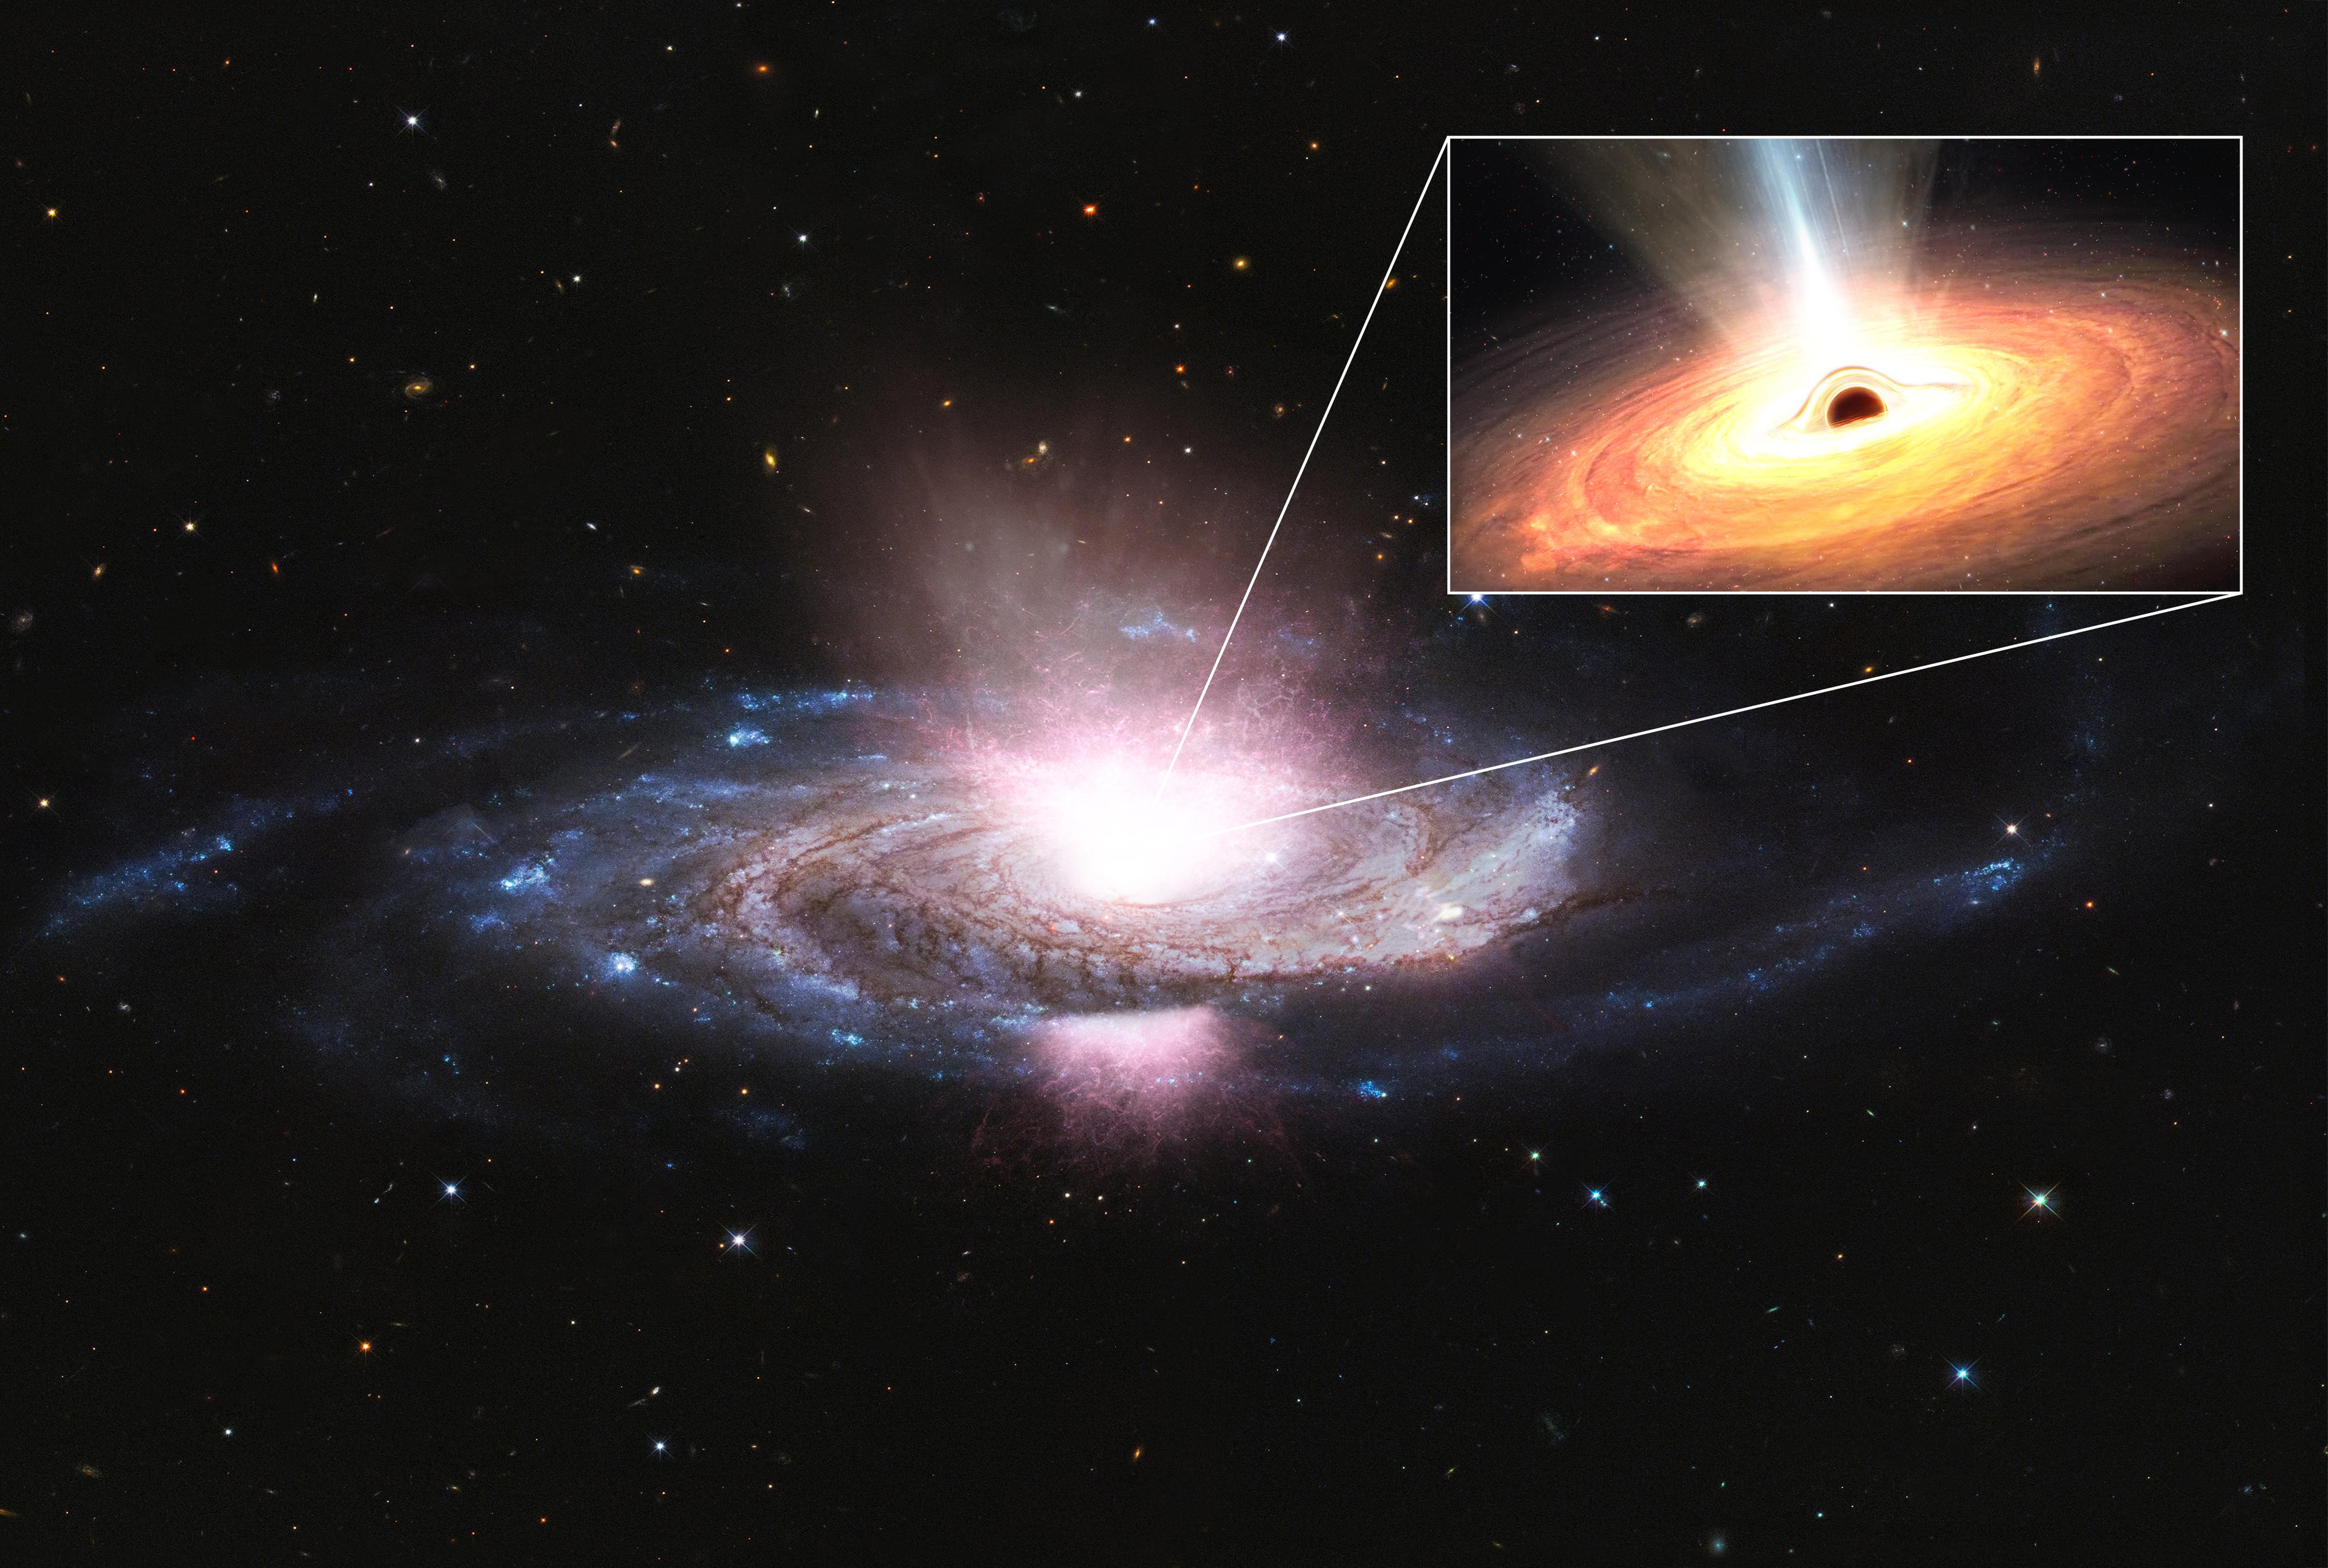 Au cœur de la galaxie, un trou noir supermassif aspire le gaz de son environnement, ce qui forme un disque d'accrétion chaud et lumineux (en orange). Les vents (en blanc) sont dus aux champs magnétiques présents dans le disque, qui projettent des particules dans toutes les directions à des vitesses incroyablement élevées. Ces vents bloquent efficacement les rayons X (en bleu) émis par le plasma extrêmement chaud qui entoure le trou noir, appelé couronne. [ESA - work performed by ATG]